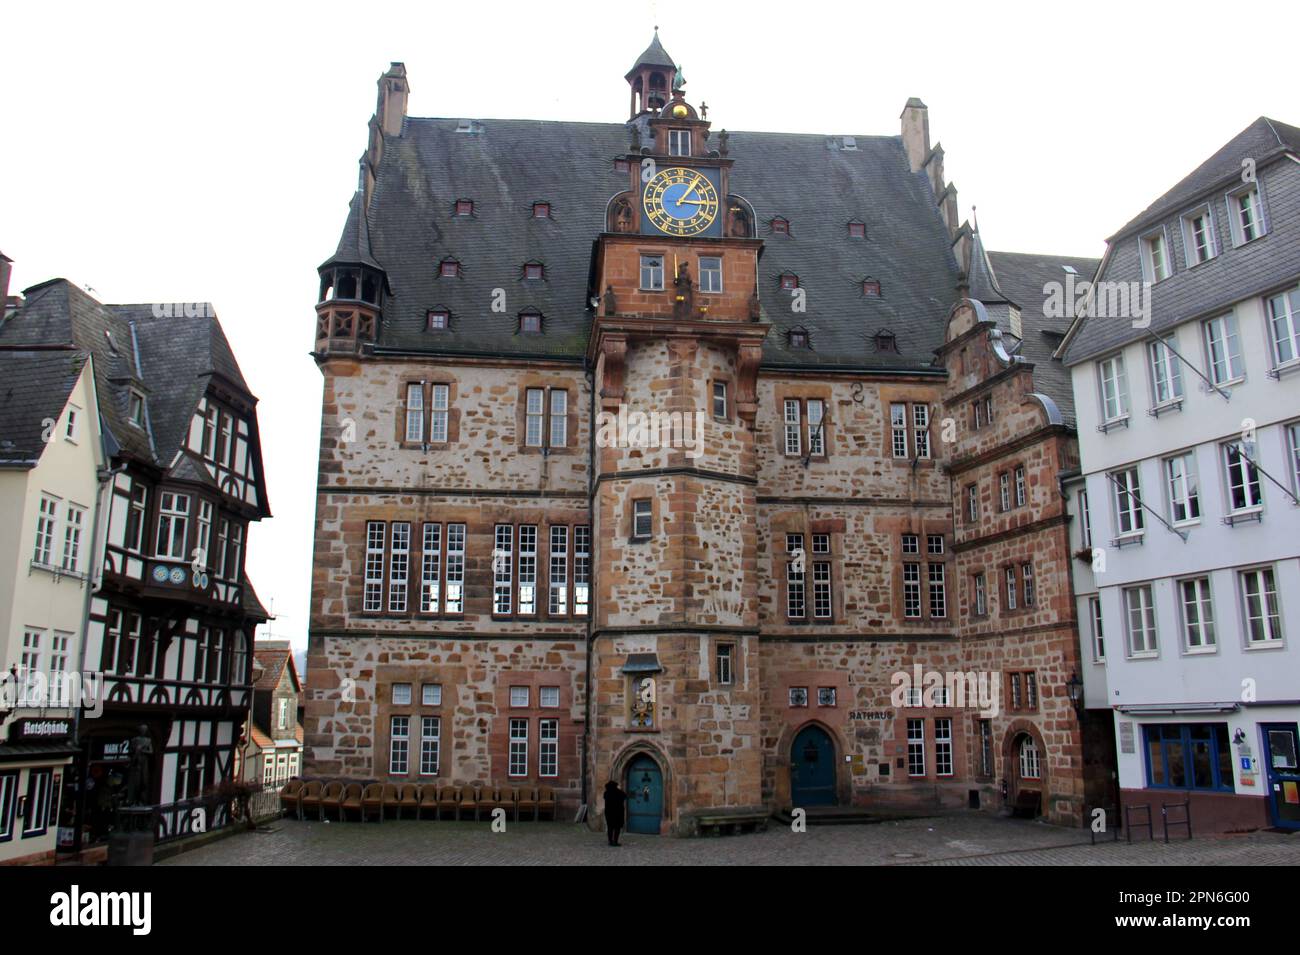 Historisches Rathausgebäude aus dem 16. Jahrhundert mit astronomischer Renaissance-Uhr am Marktplatz der Oberstadt, Oberstadtmarkt, Marburg, Deutschland Stockfoto